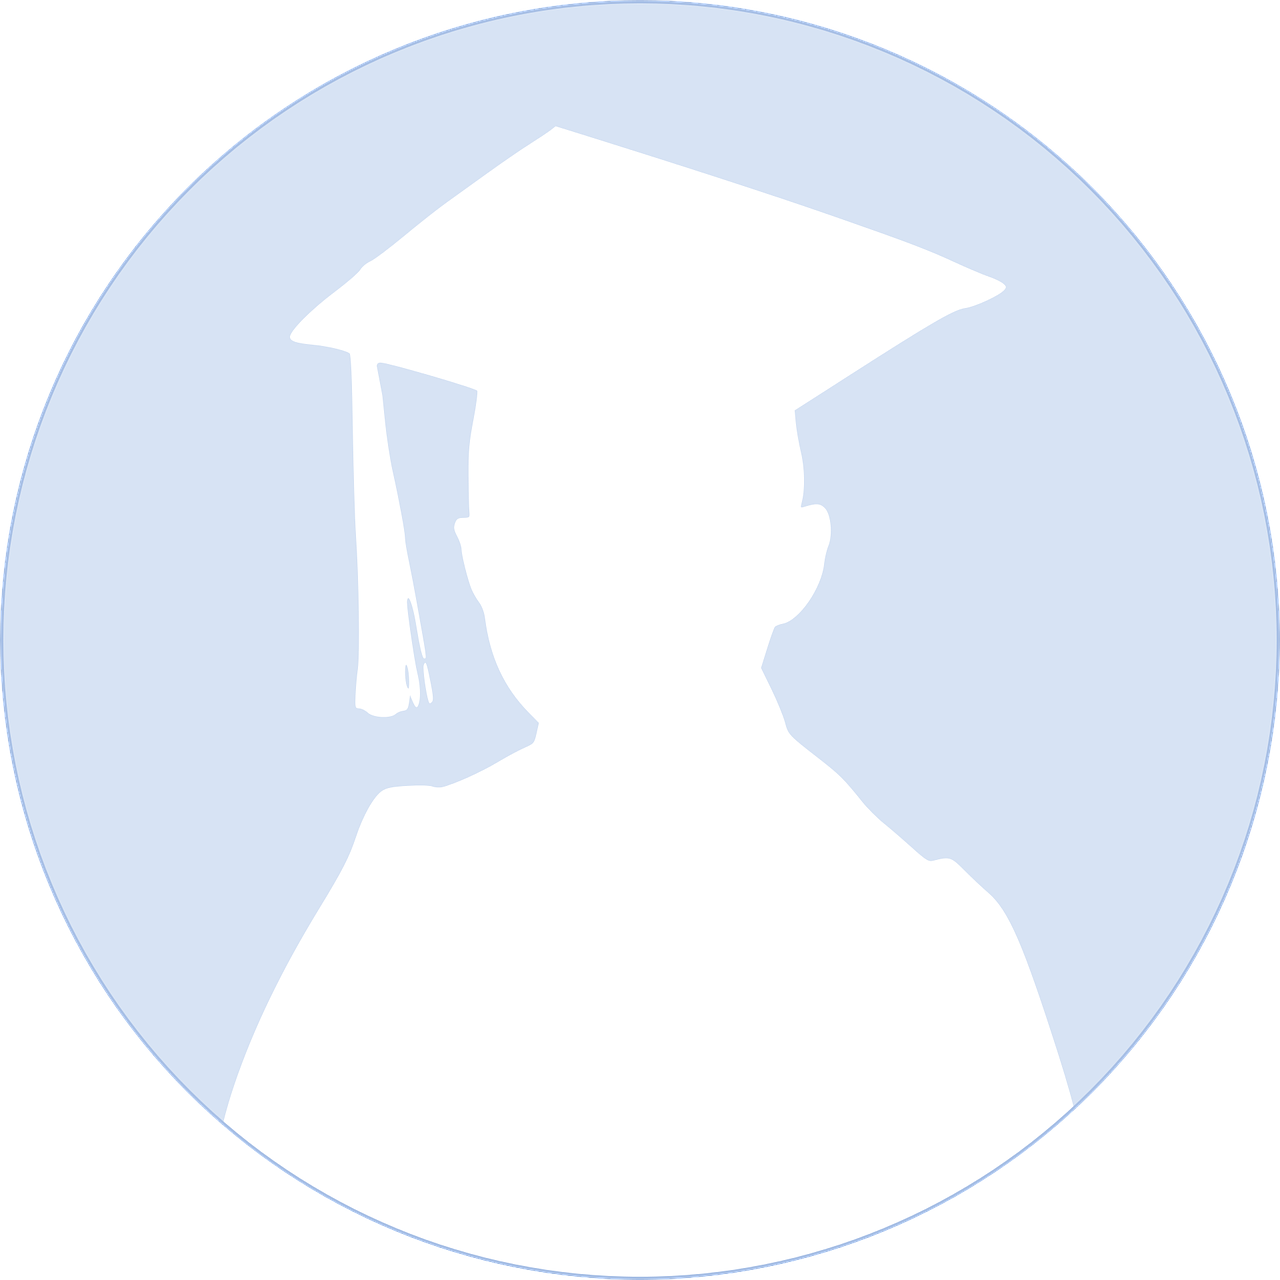 graduation profile picture free photo